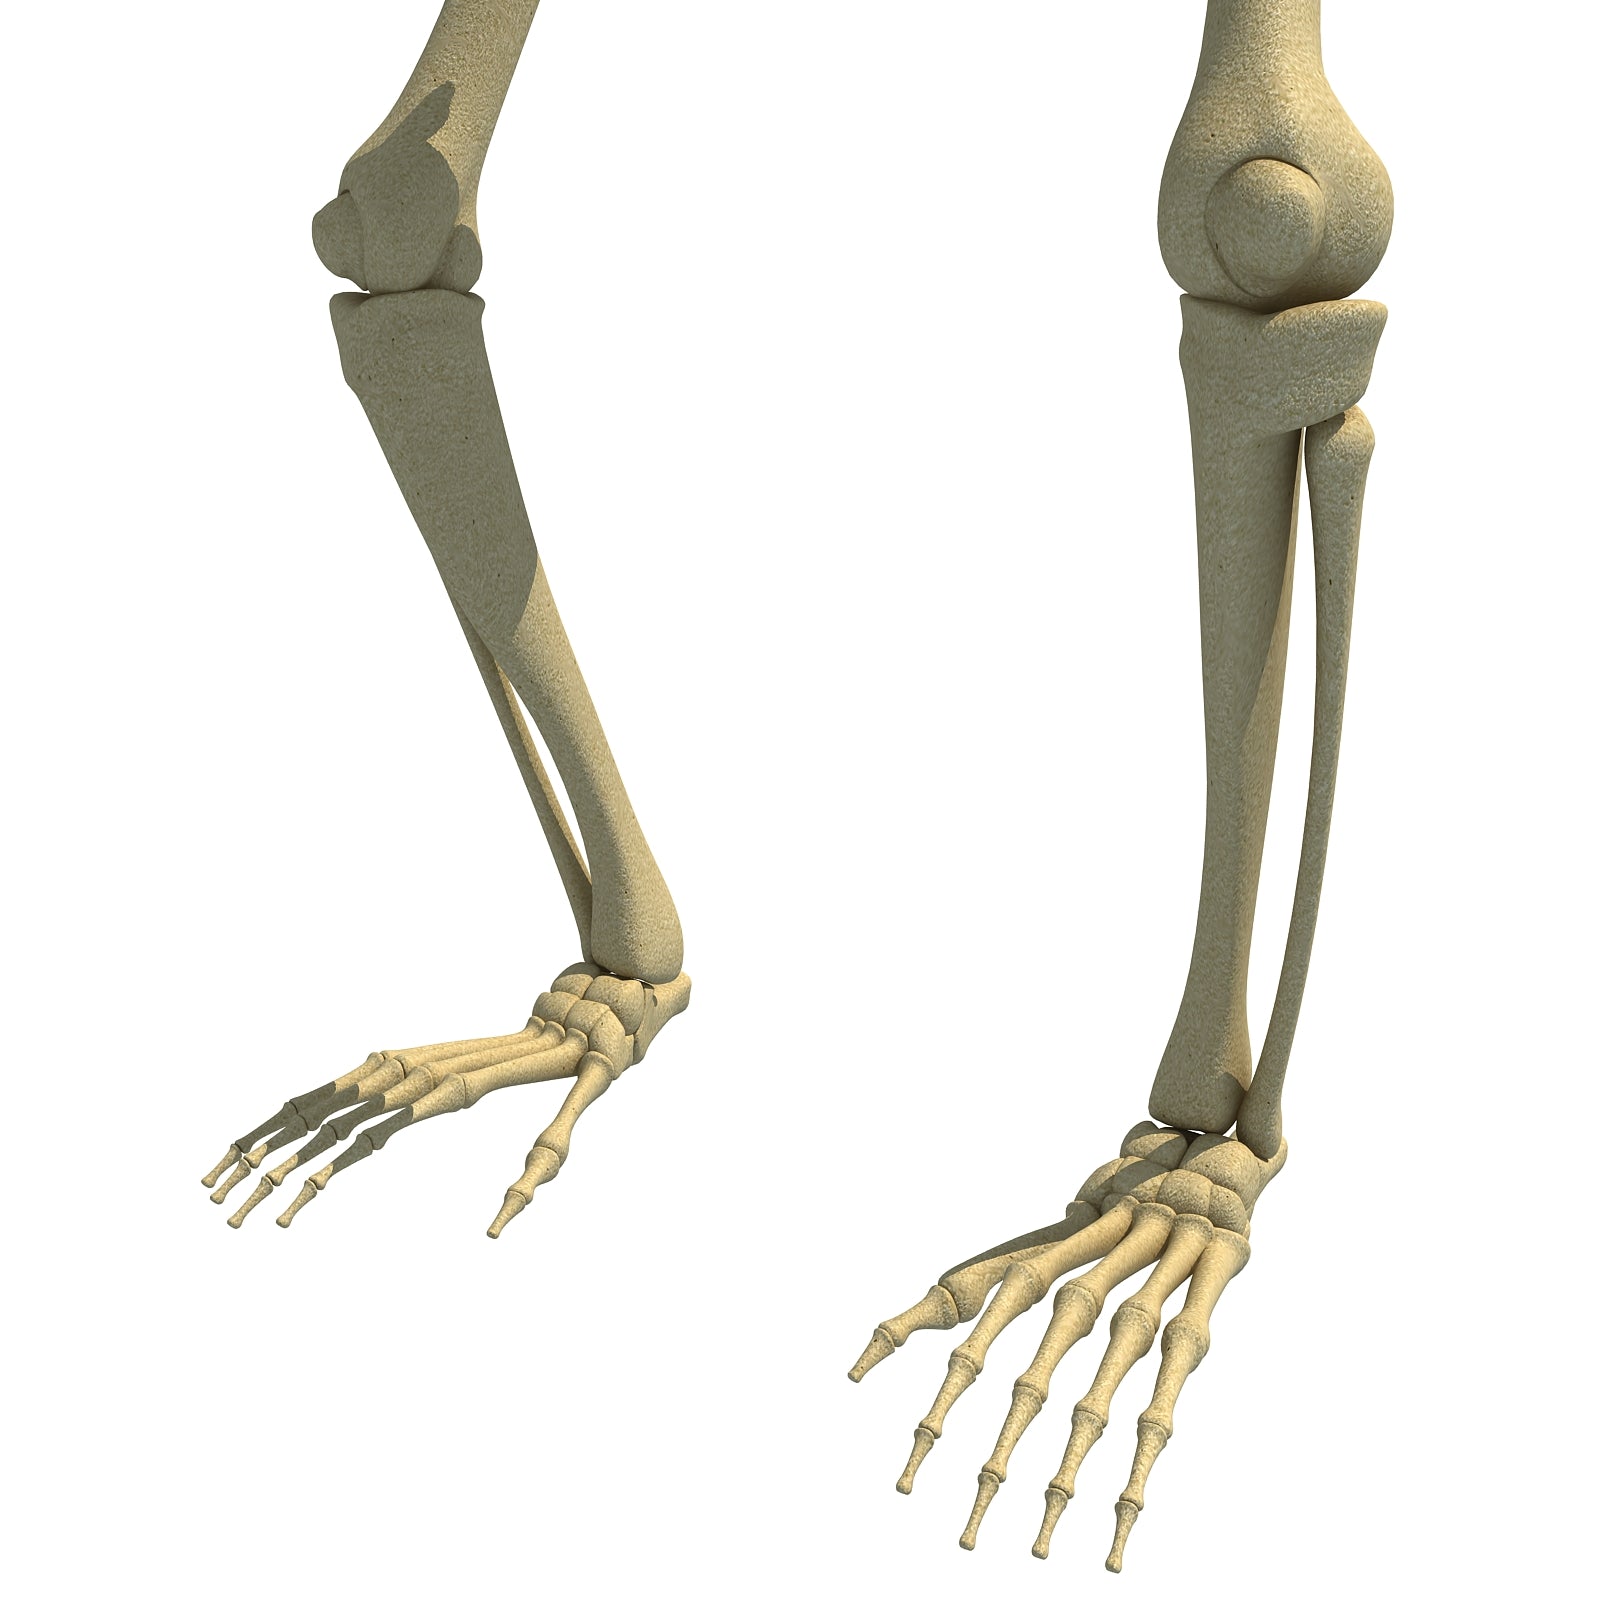 Gorilla Skeleton